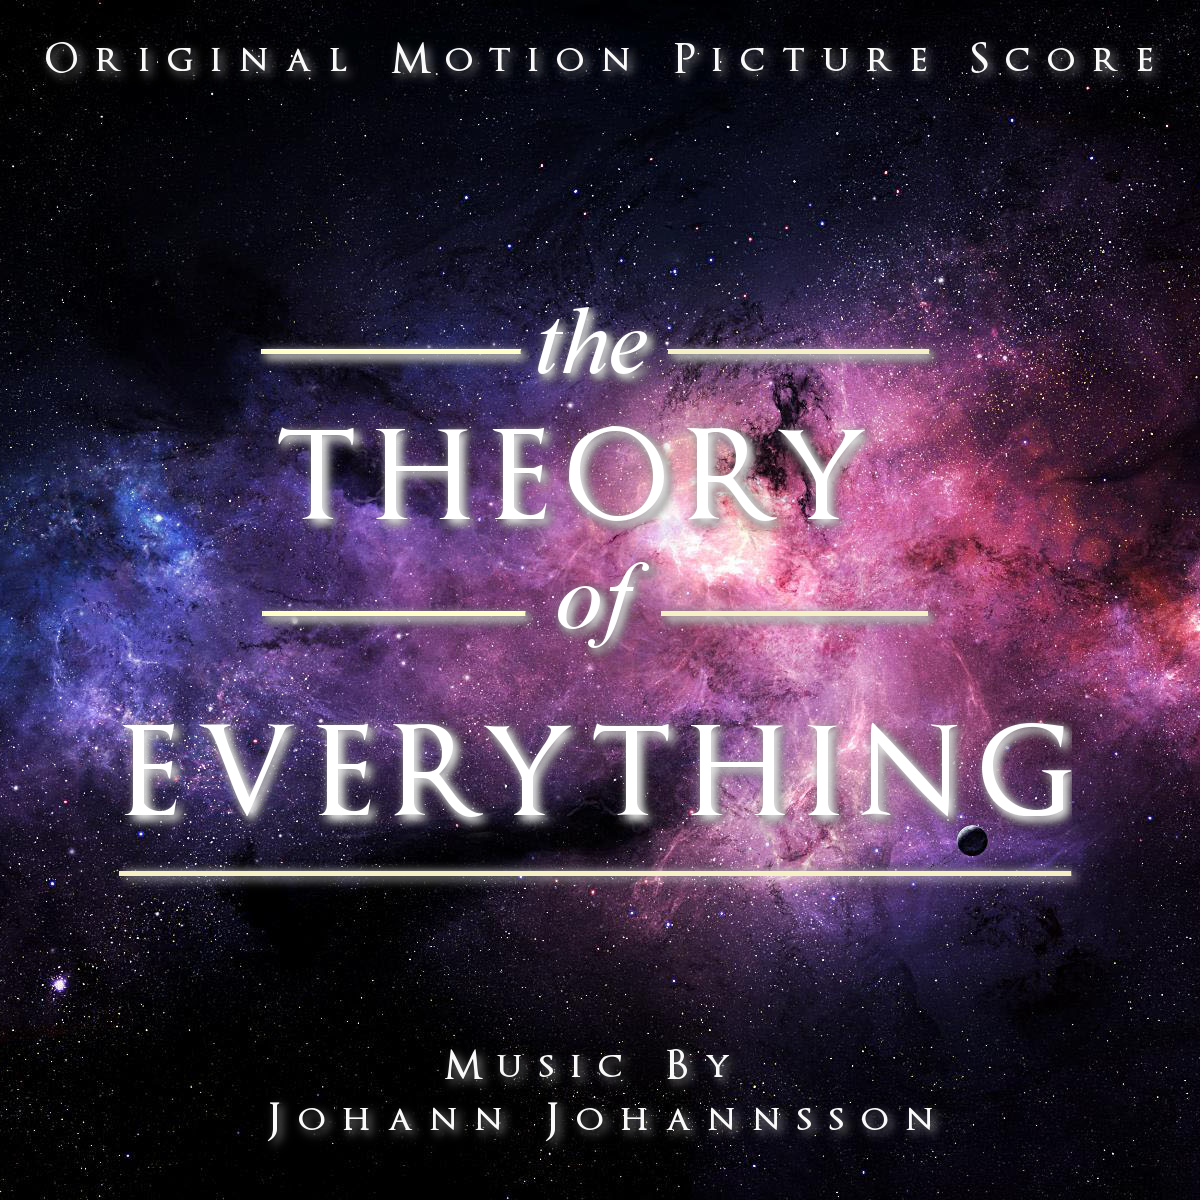 The theory of everything. Theory of everything. The Theory of everything poster. Теория всего. Theory of everything игра.